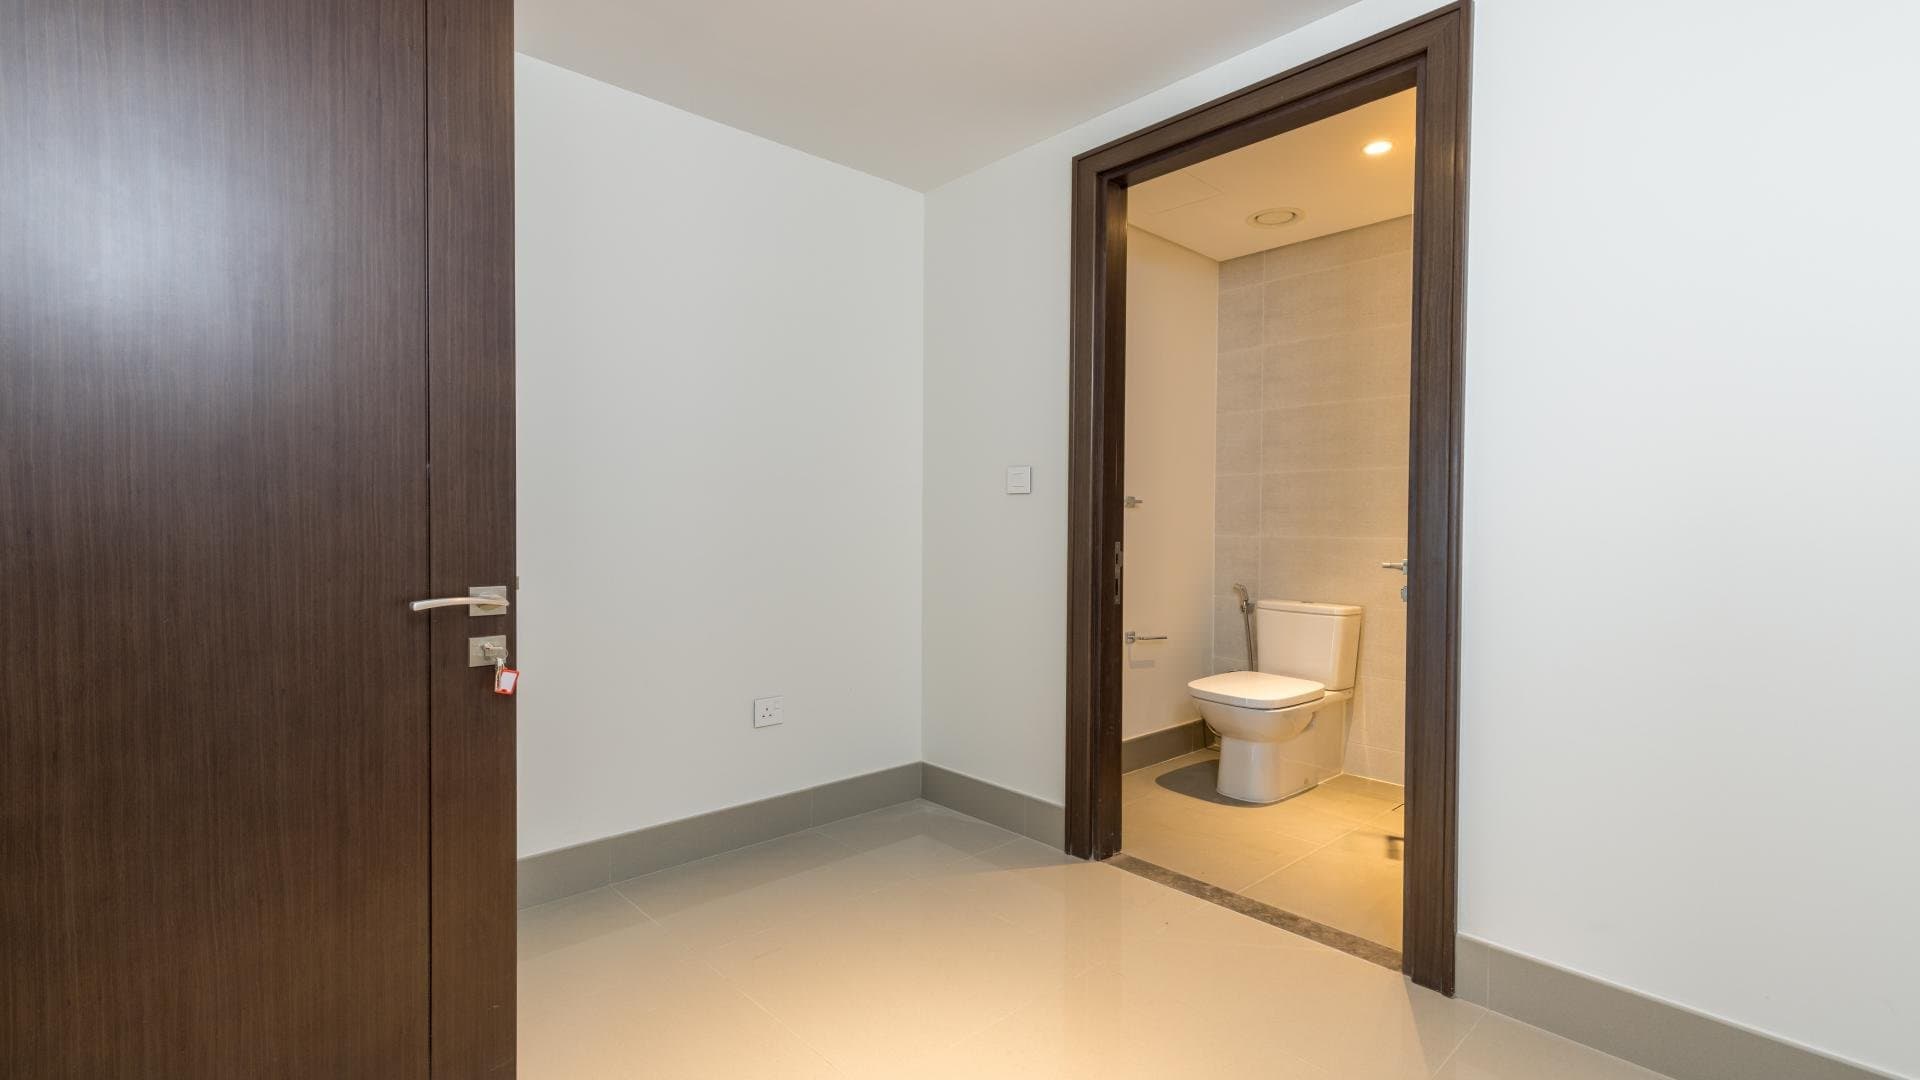 3 Bedroom Apartment For Sale Al Ramth 21 Lp37924 2d9cf0bb4f608e00.jpg